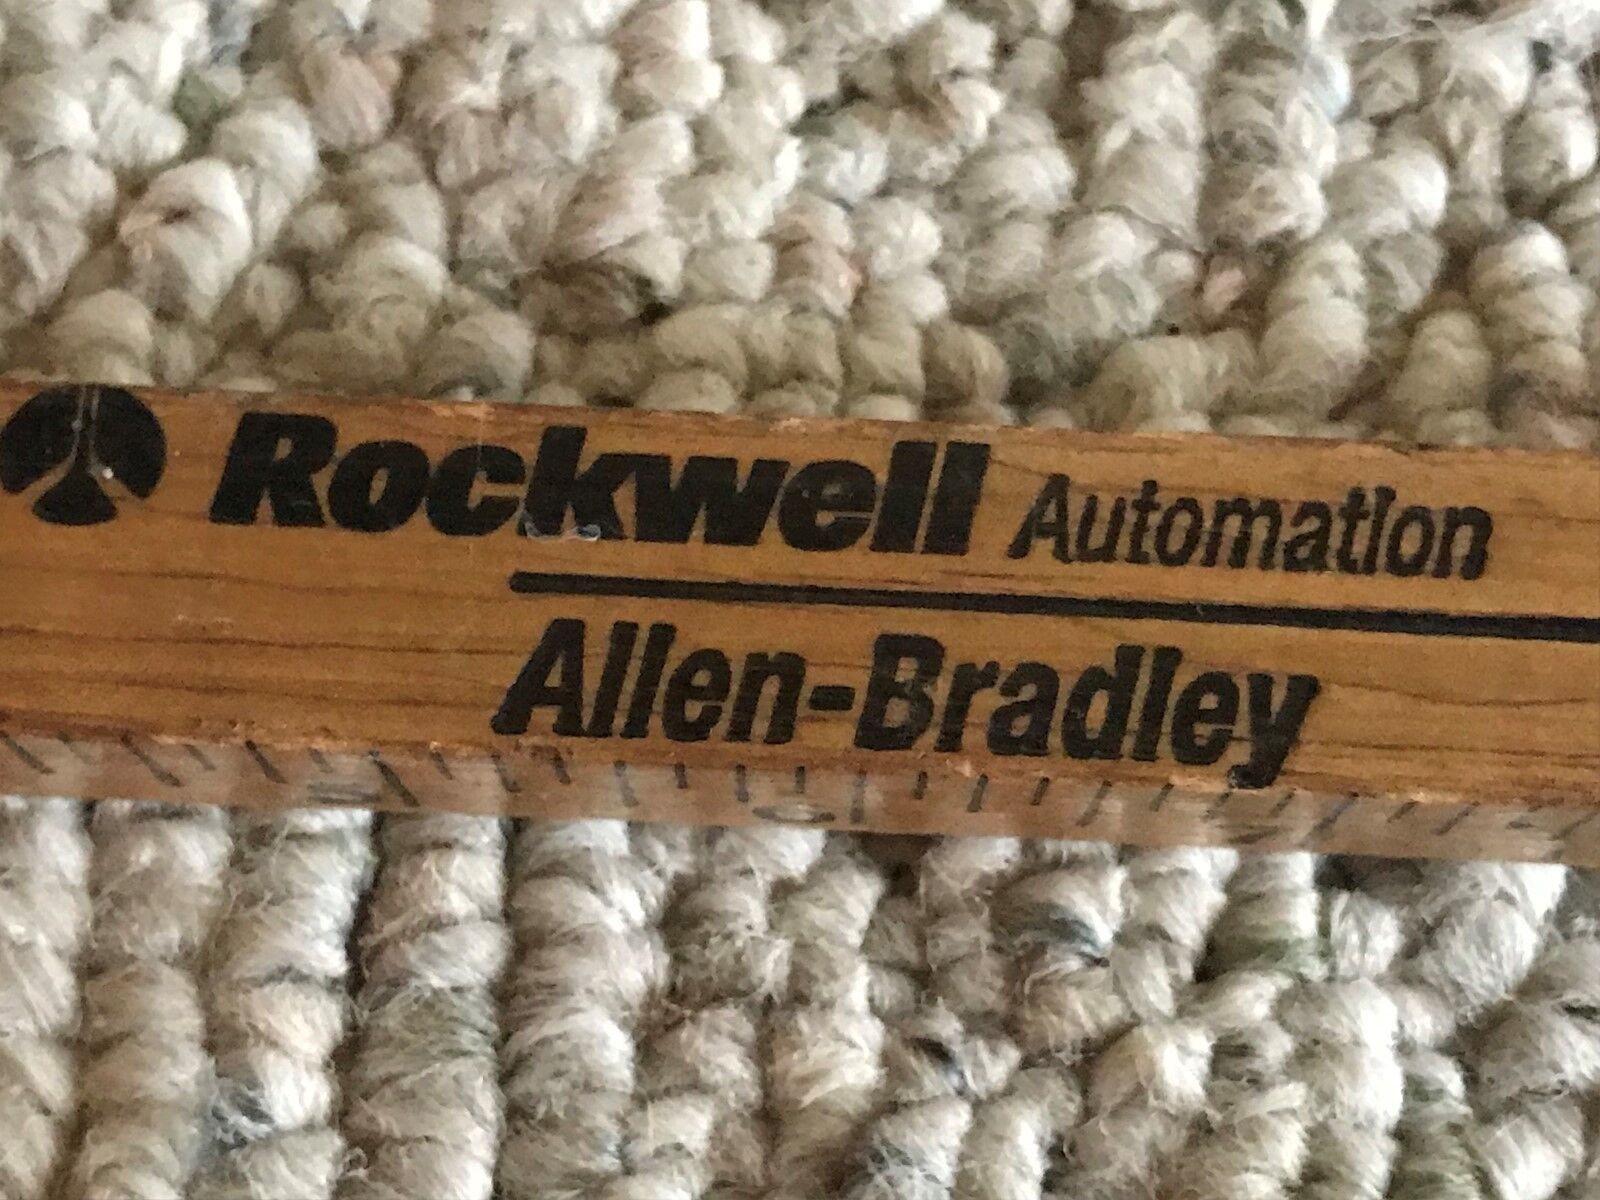 Allen Bradley Walking Stick Yardstick Square Wood Rockwell Automation Vintage